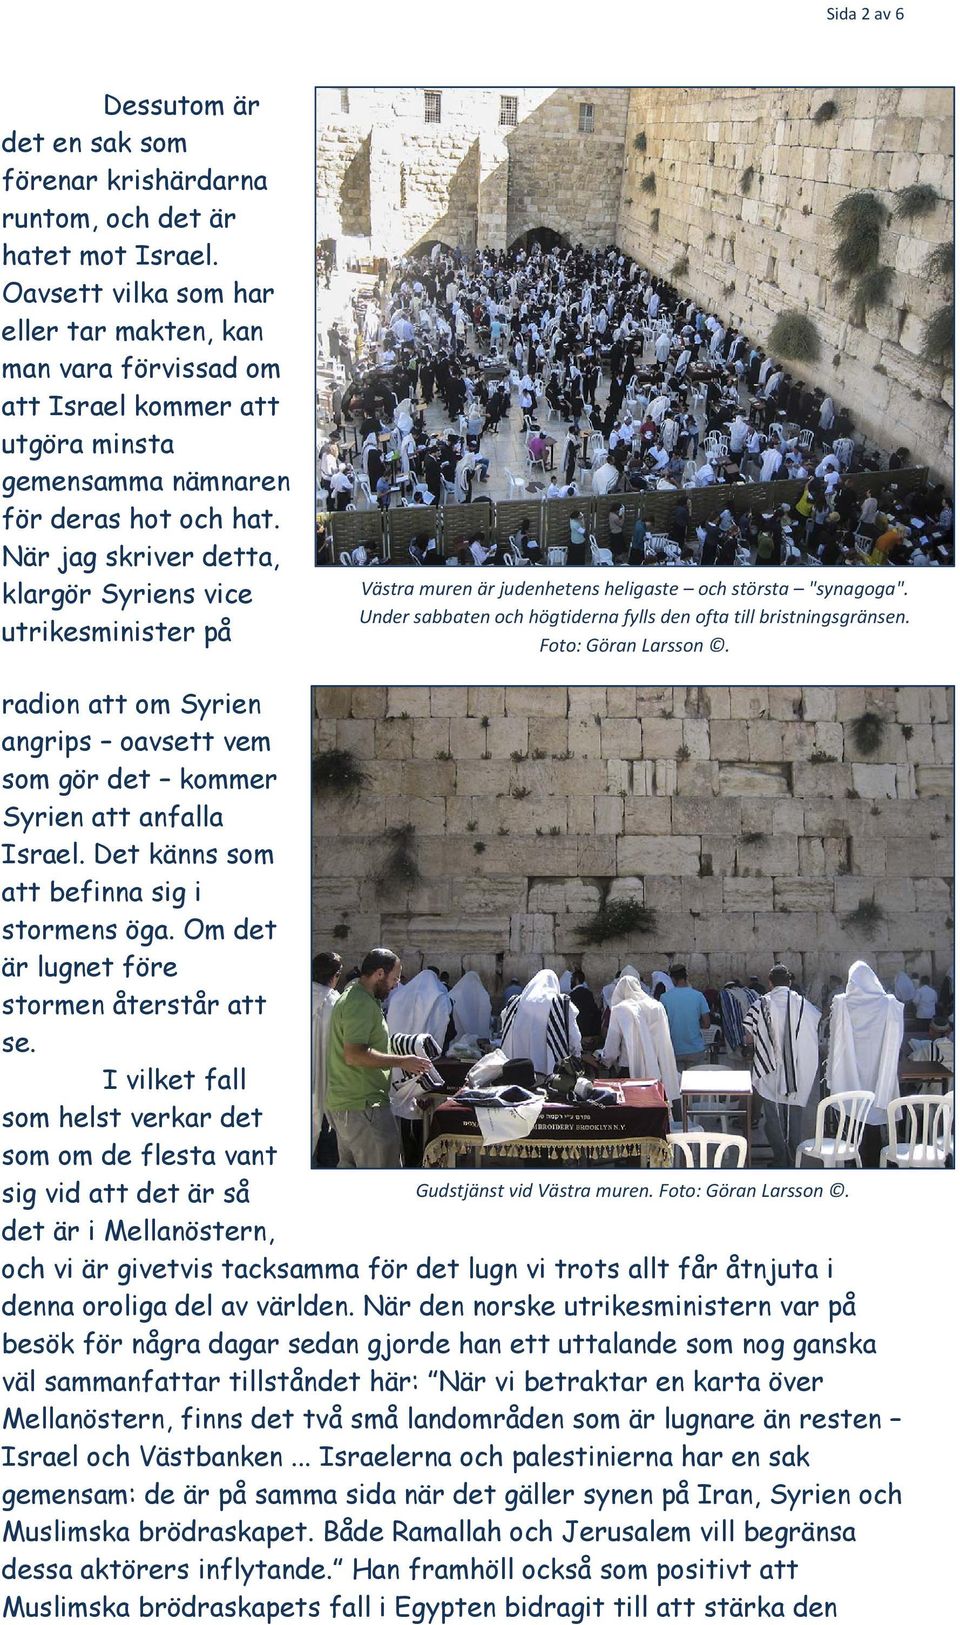 När jag skriver detta, klargör Syriens vice utrikesminister på Västra muren är judenhetens heligaste och största "synagoga". Under sabbaten och högtiderna fylls den ofta till bristningsgränsen.